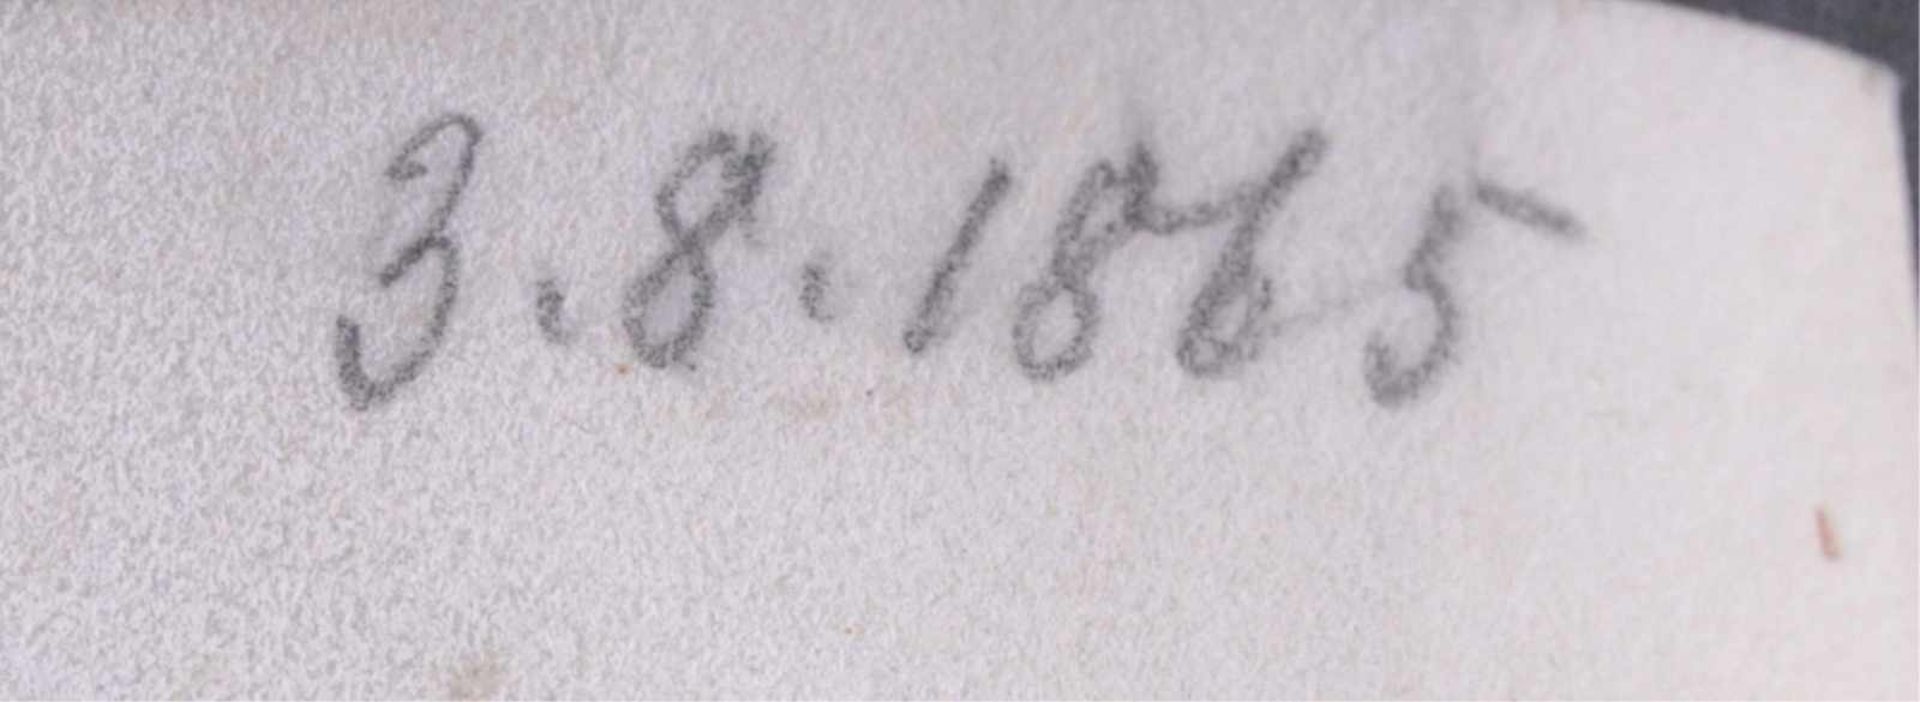 Promotionsurkunde "Summis Auspiicis" 1865, WienHandgemalte Urkunde mit diversen Autographen. - Bild 3 aus 6